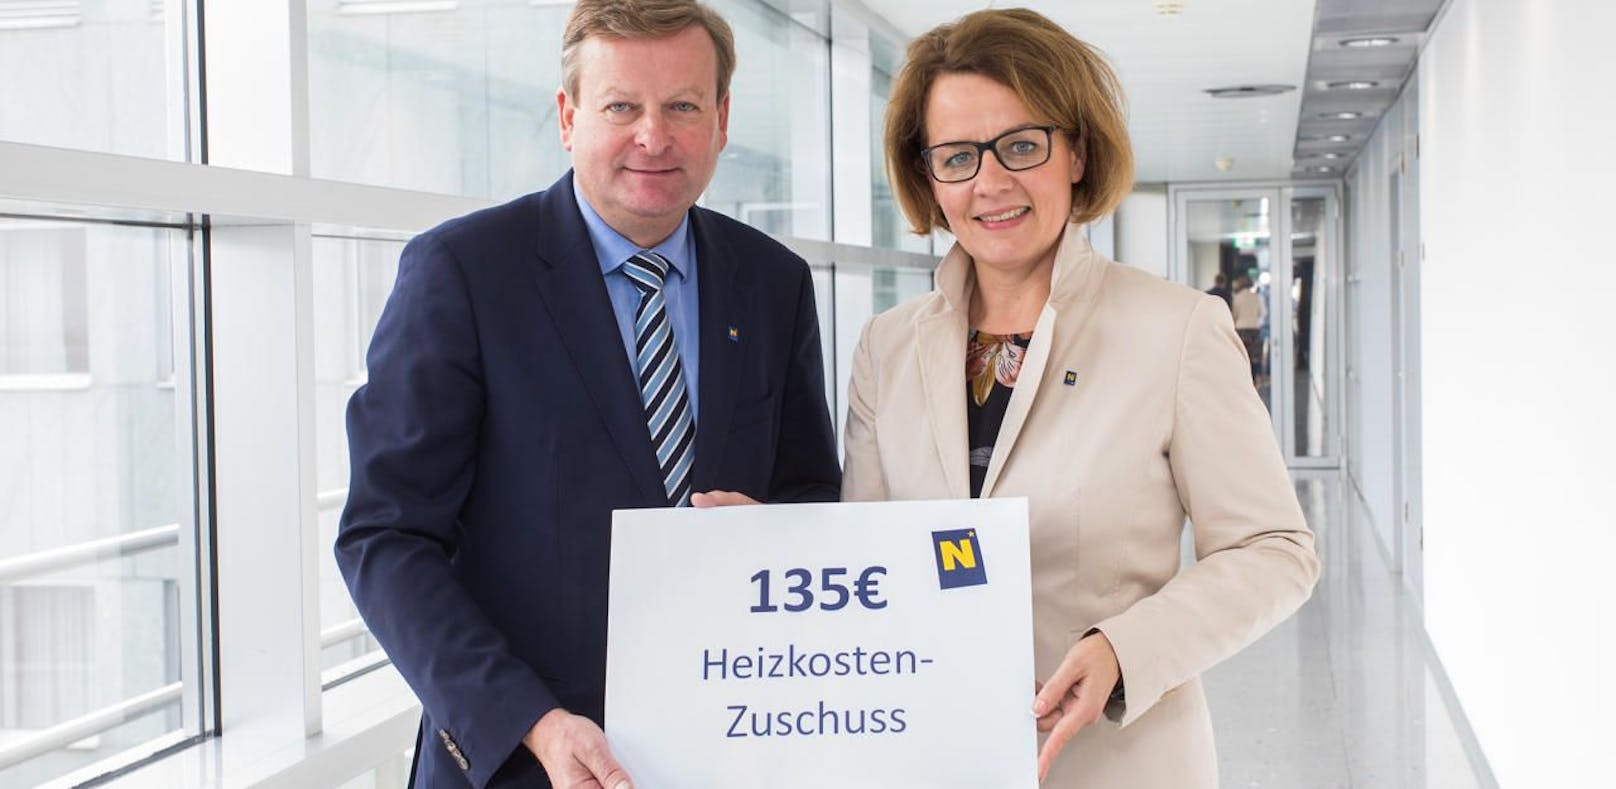 Landesrätin Christiane Teschl-Hofmeister (VP) und Landesrat Gottfried Waldhäusl (FP) freuen sich über den Beschluss des Heizkostenzuschusses für die Heizperiode 2019/2020 in der heutigen Sitzung der niederösterreichischen Landesregierung.